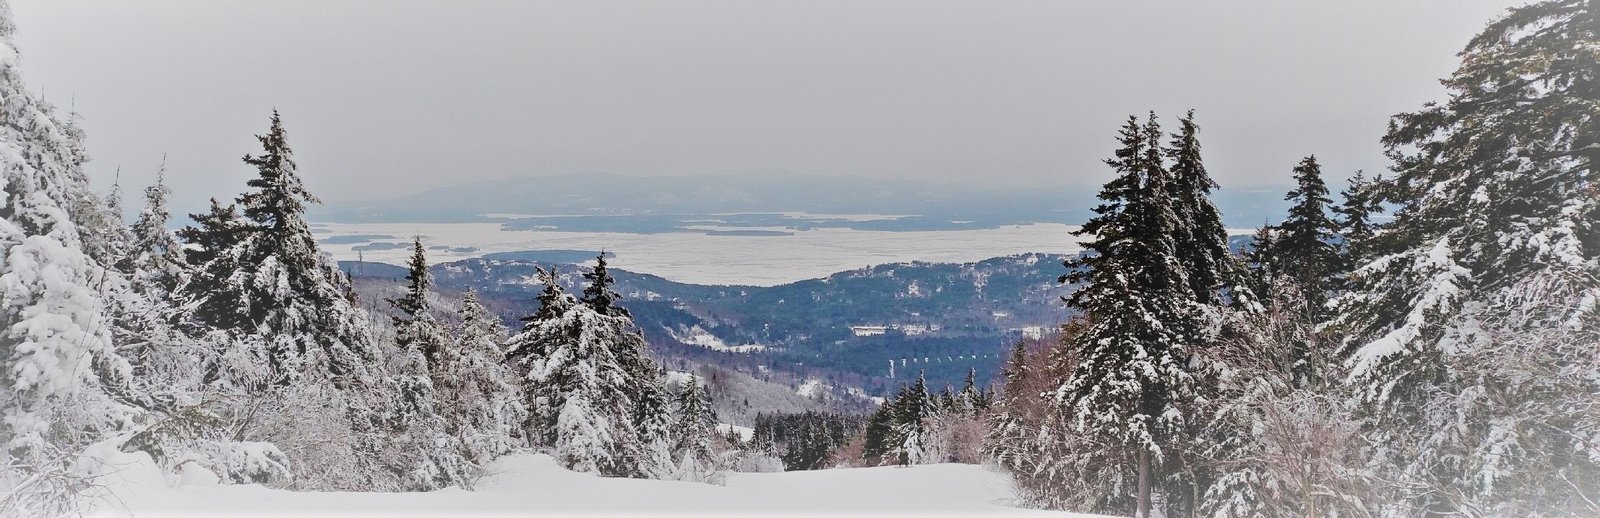 Gunstock Resort Winter Skiing - Lake Winnipesaukee Info 